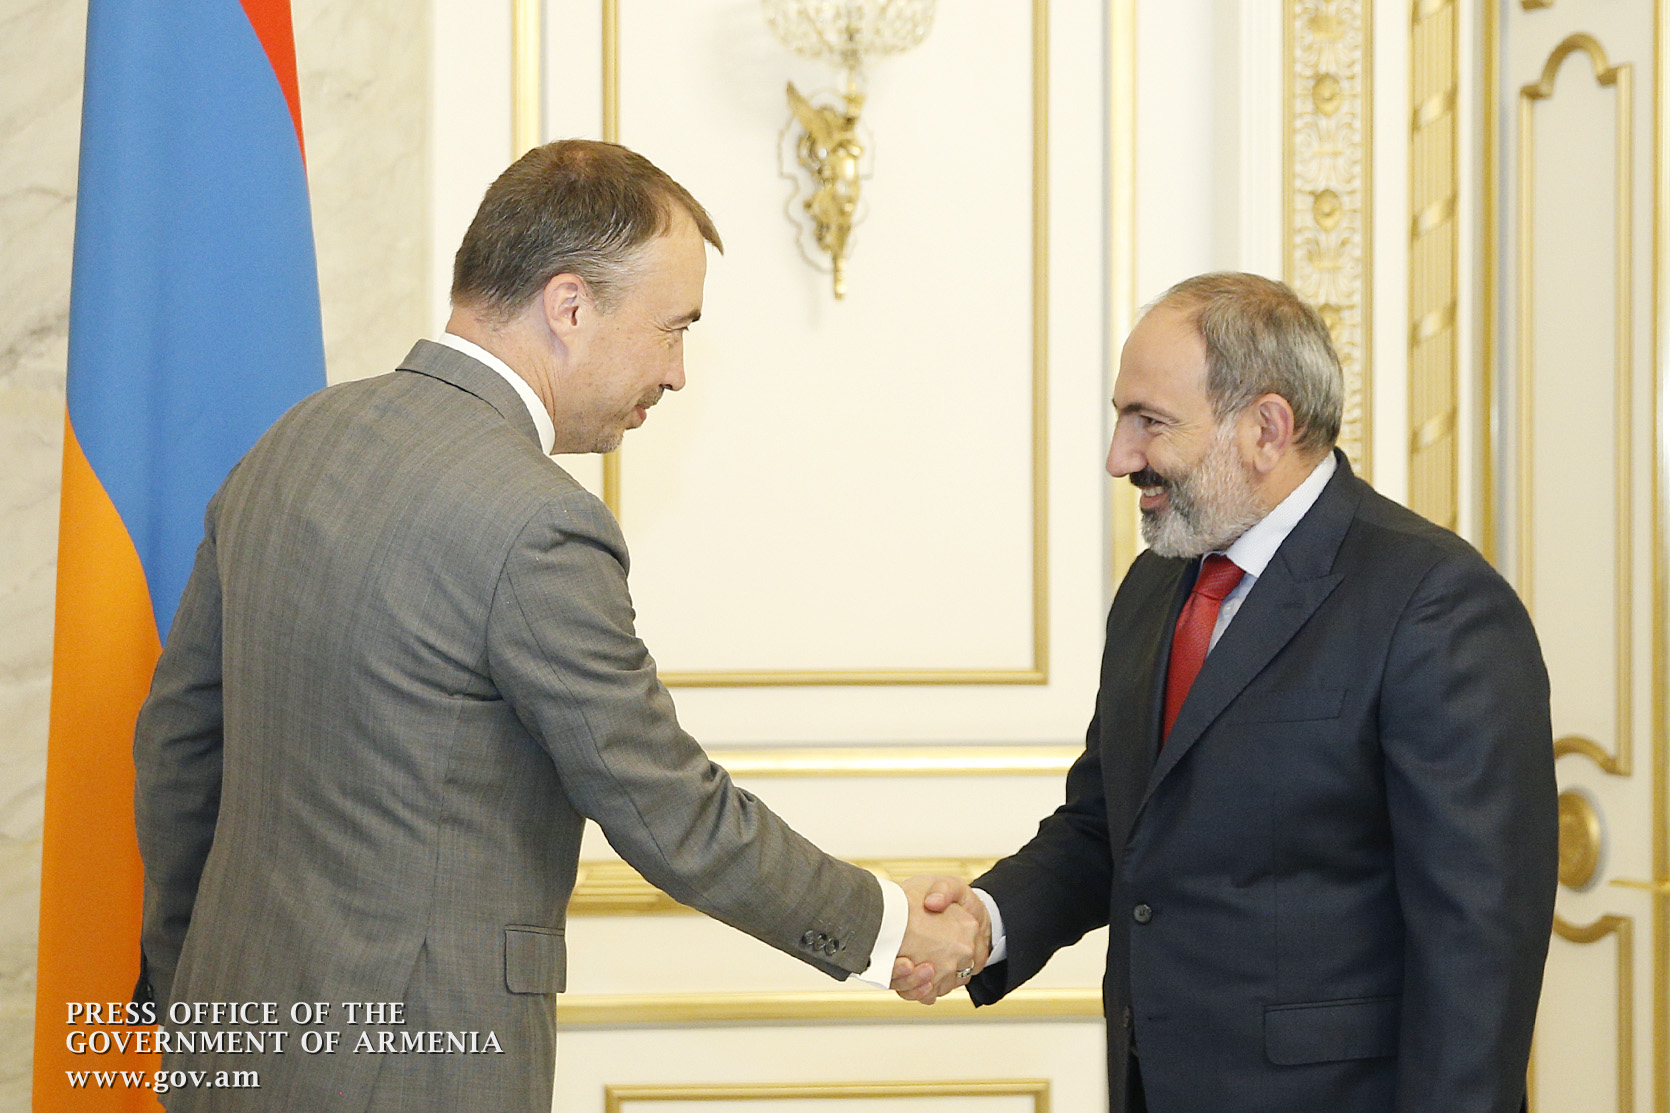 ЕС готов продолжить содействие Армении - встреча в правительстве